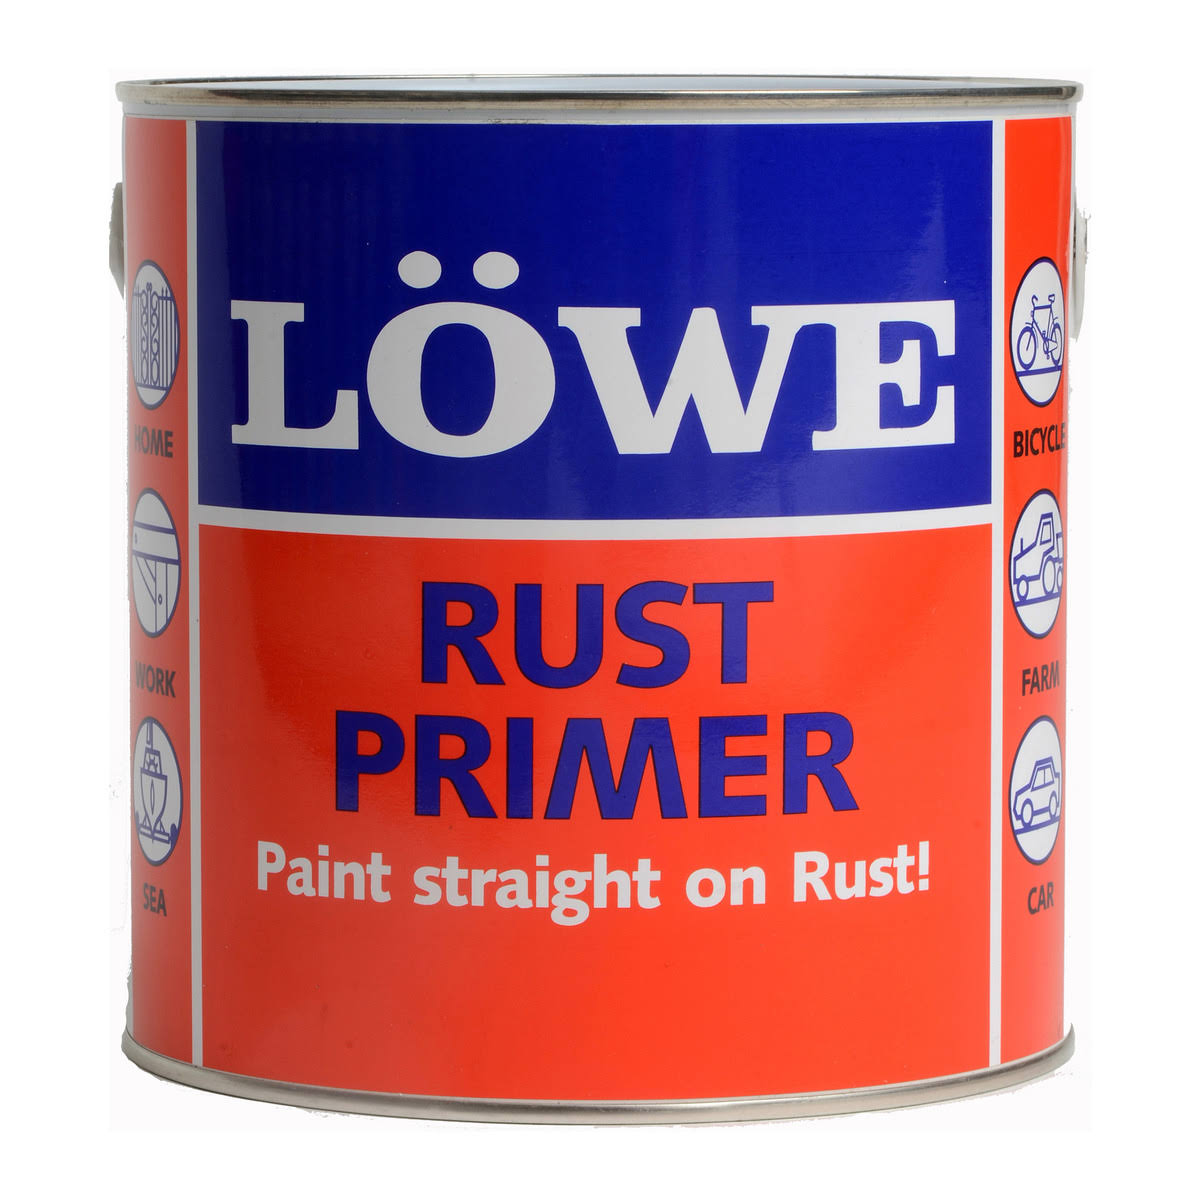 Lowe Rust Primer Tile Red 6.5kg